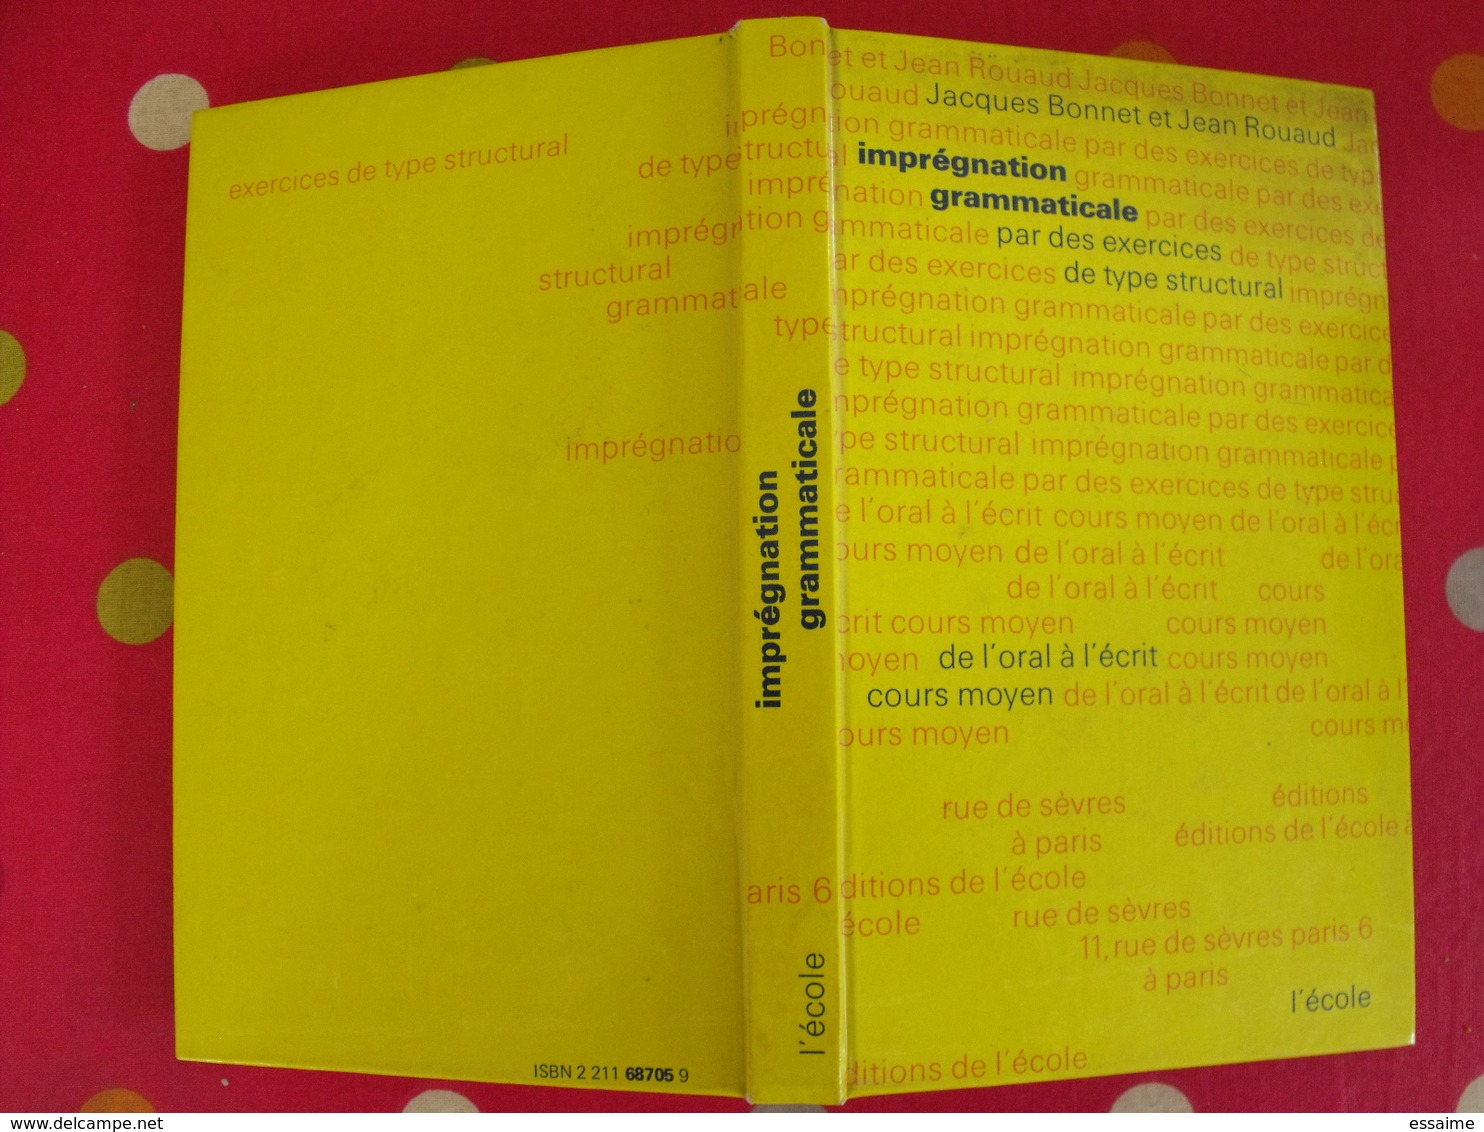 7 Livres Analyse Logique Grammaticale Fautes D'orthographe Imprégnation Grammaticale Langue Française. Hervé Guillot - Wholesale, Bulk Lots